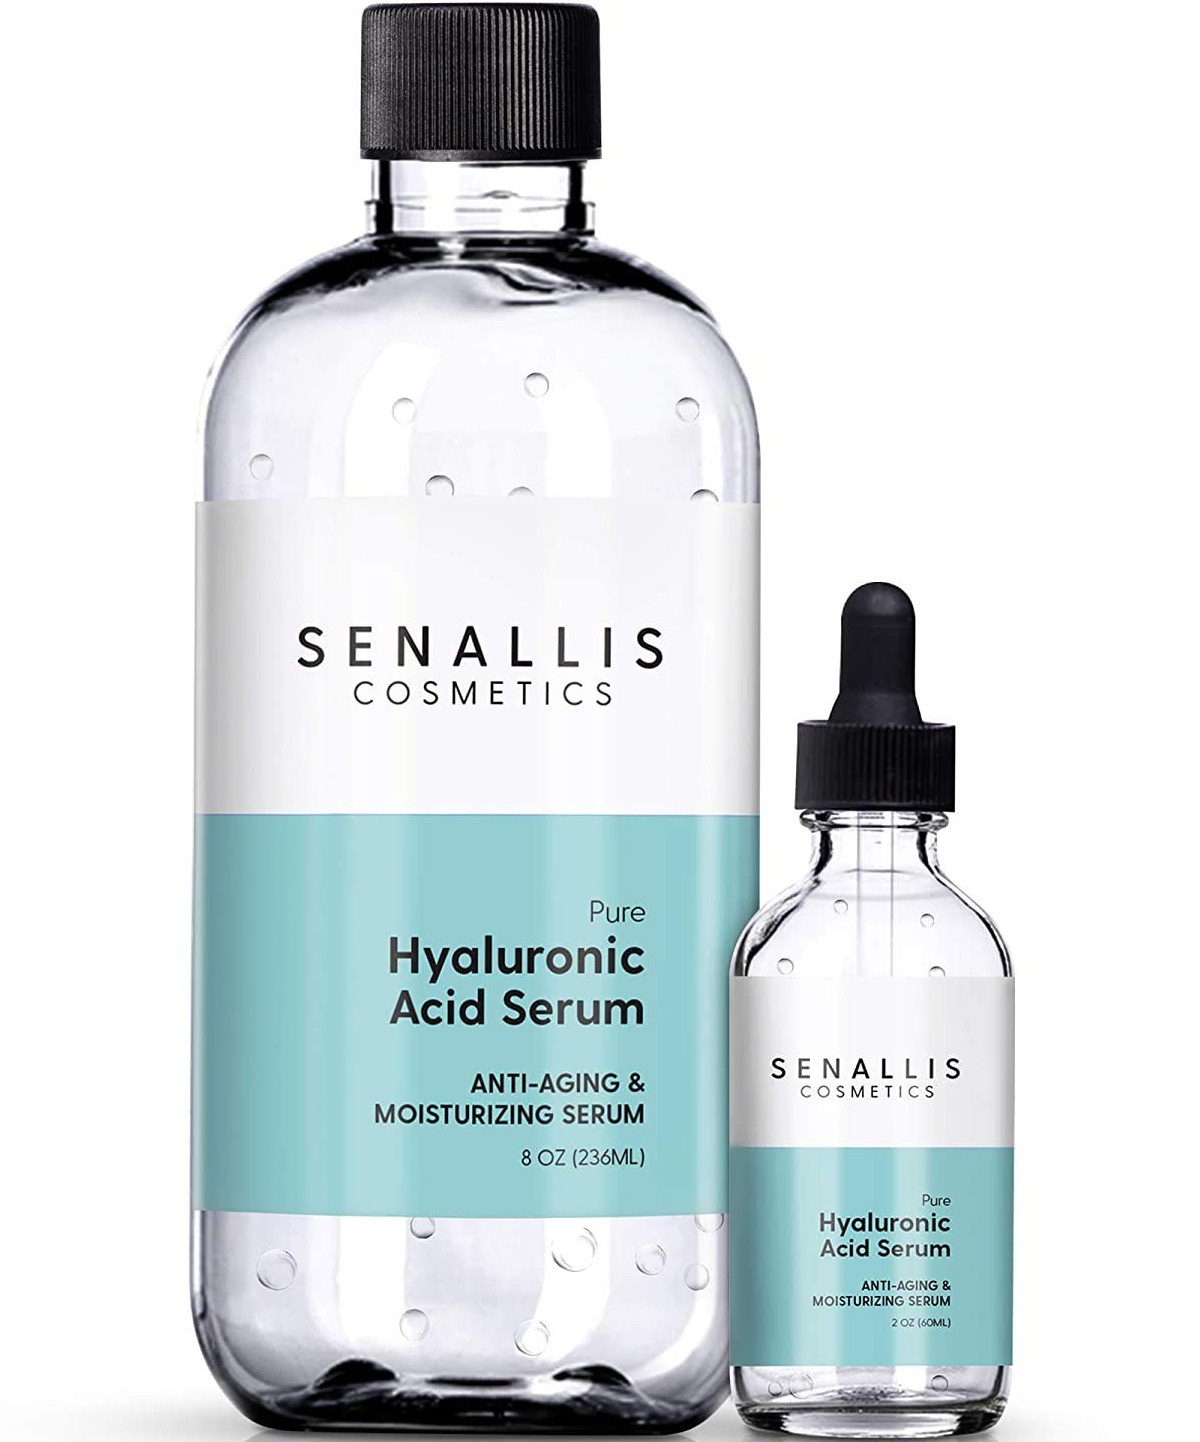 Senallis Cosmetics Hyaluronic Acid Serum